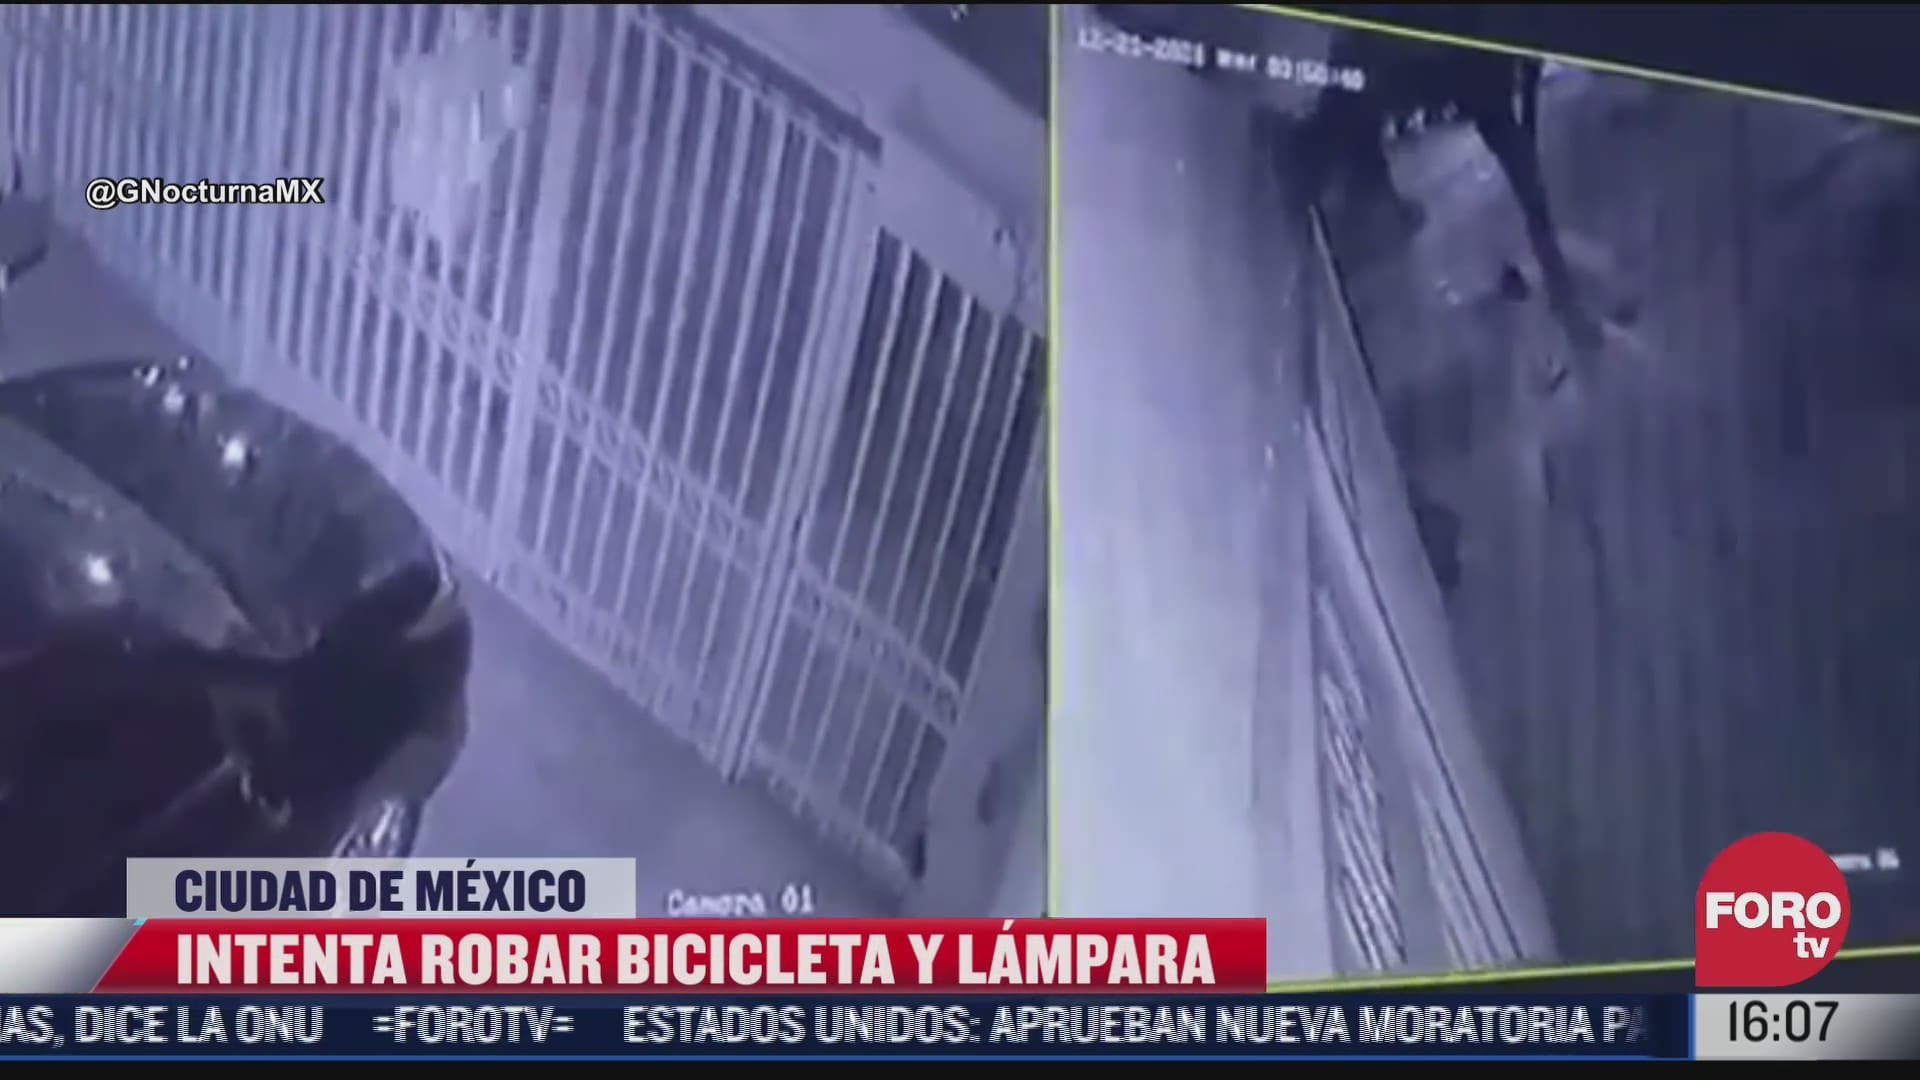 ladron fracasa al intentar robar bicicleta en coyoacan